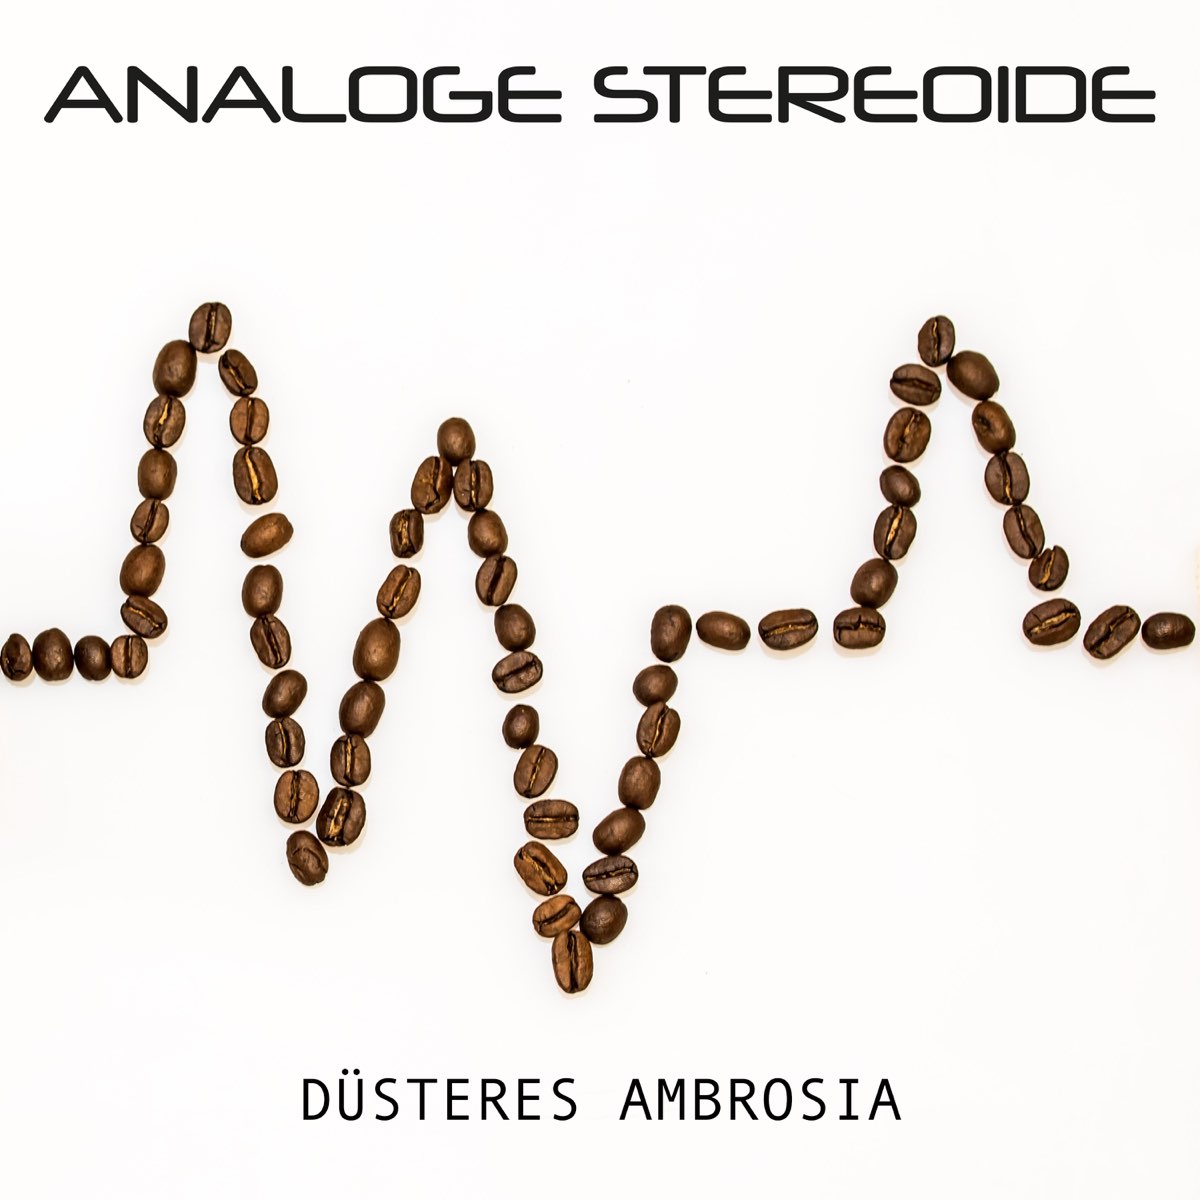 Корм амброзия для собак. Ambrosia Music Band logo.